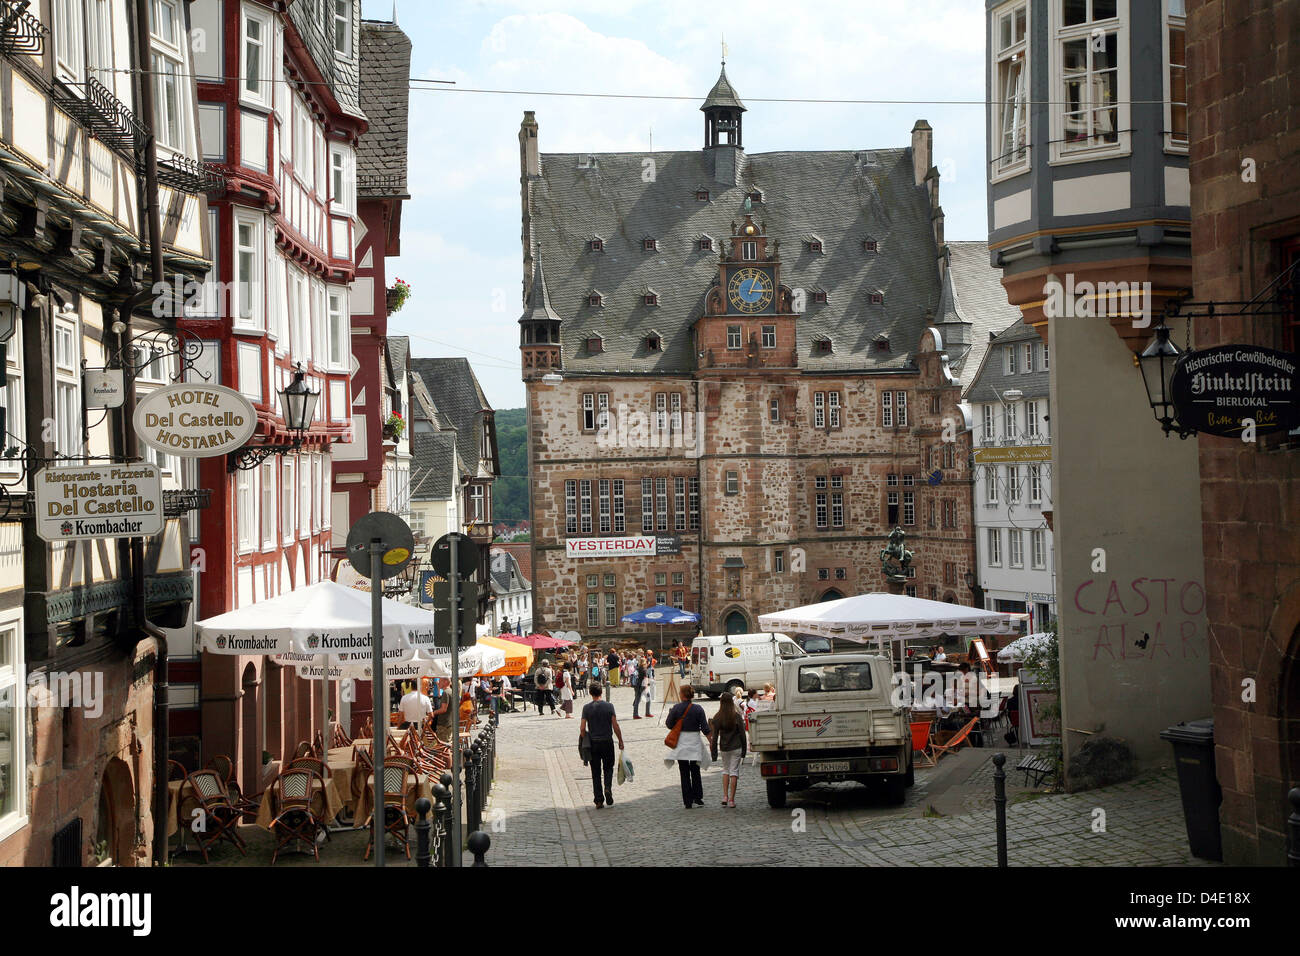 Das Bild zeigt den alten Marktplatz vor dem historischen Rathaus (zurück) in Marburg, Deutschland, 13. Mai 2008. Foto: Uwe Zucchi Stockfoto